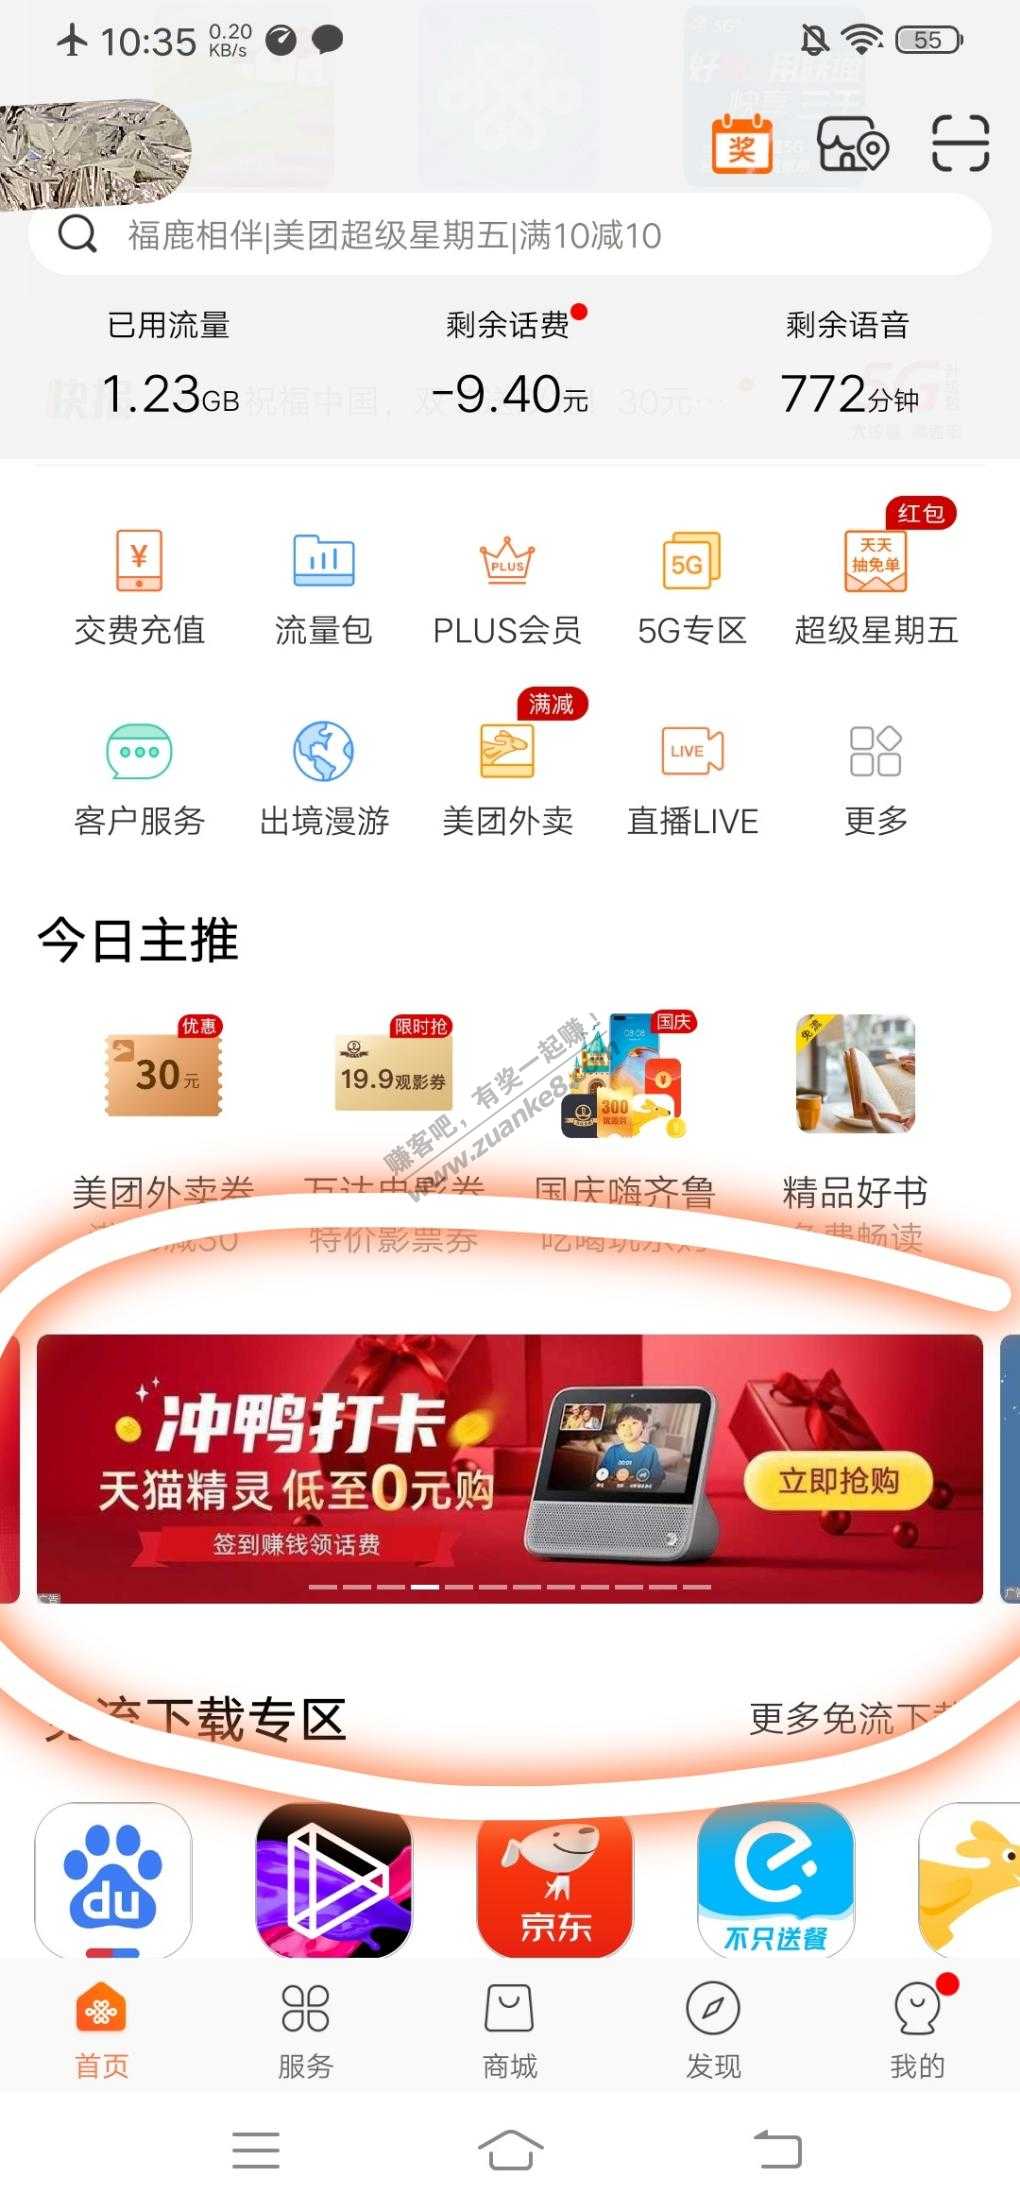 联通掌厅app冲鸭打卡0元购天猫精灵-时间太长-让了-惠小助(52huixz.com)